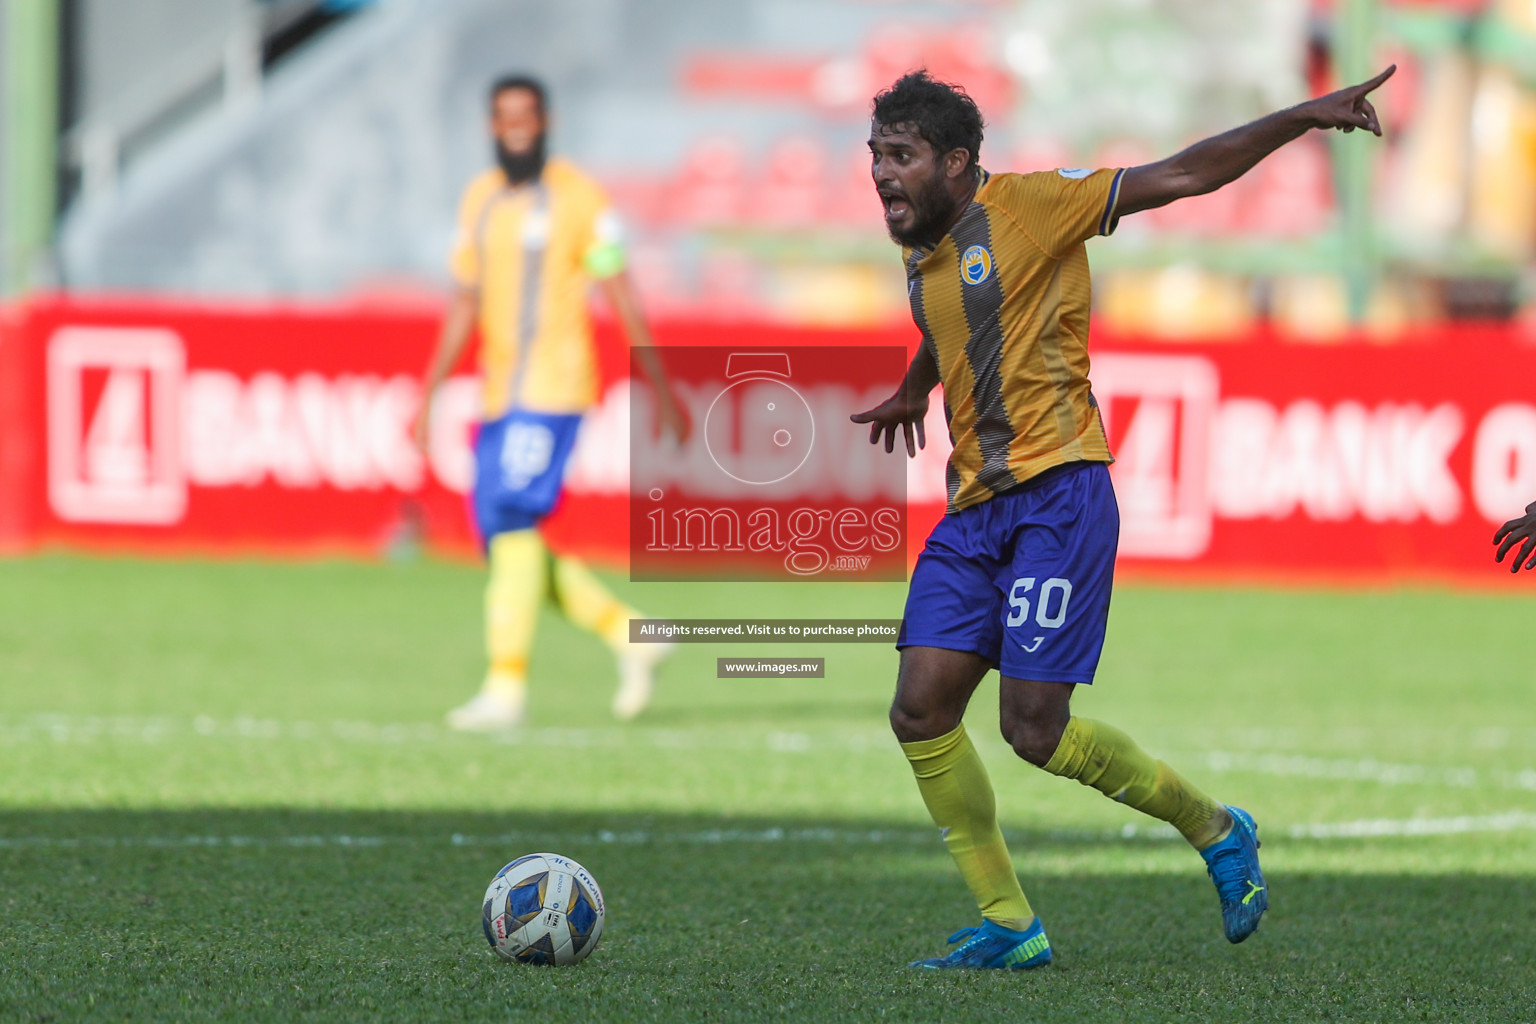 Club Valencia vs Da Grande SC in Dhiraagu Dhivehi Premier League 2020-21 on 16January 2021 held in Male', Maldives